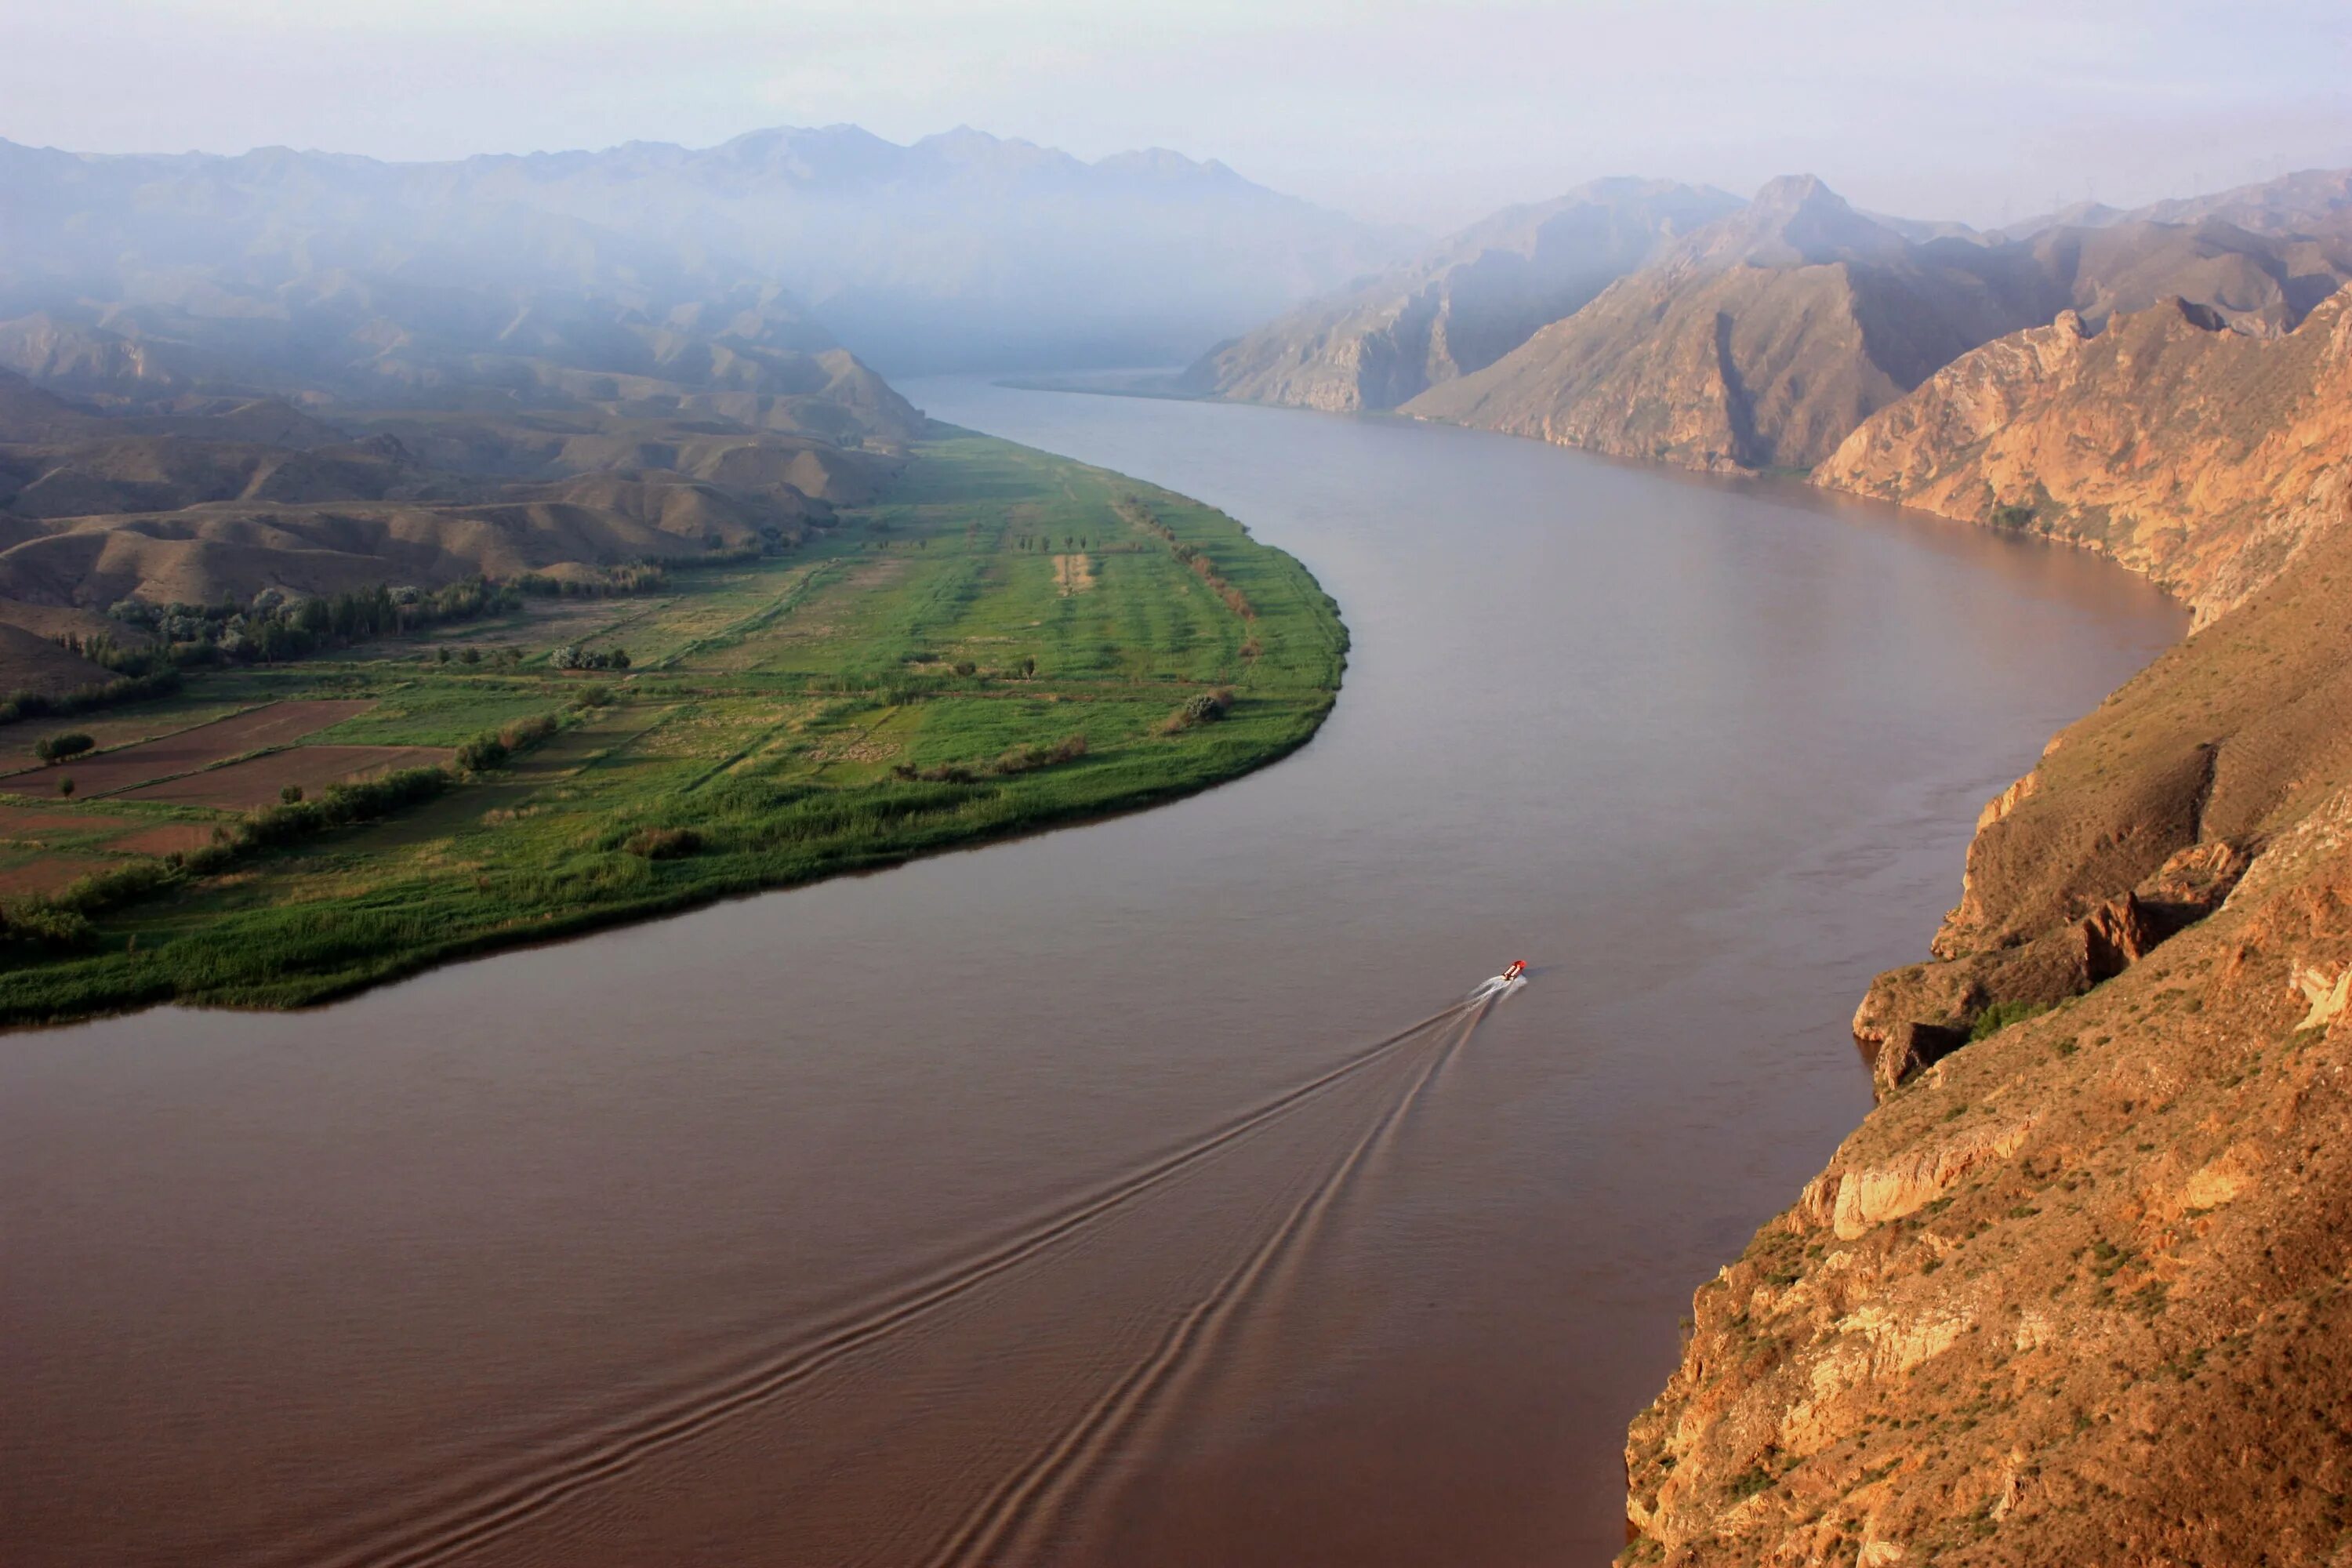 Длина реки янцзы в км